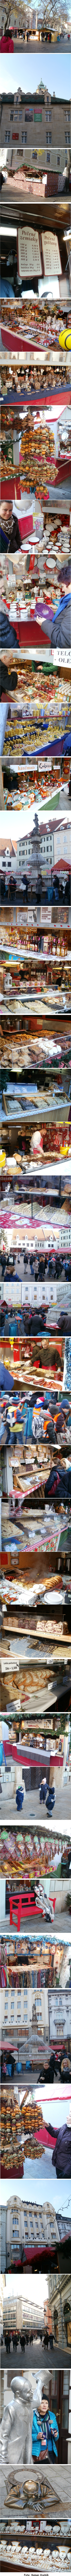 Bratislava vianočný trh